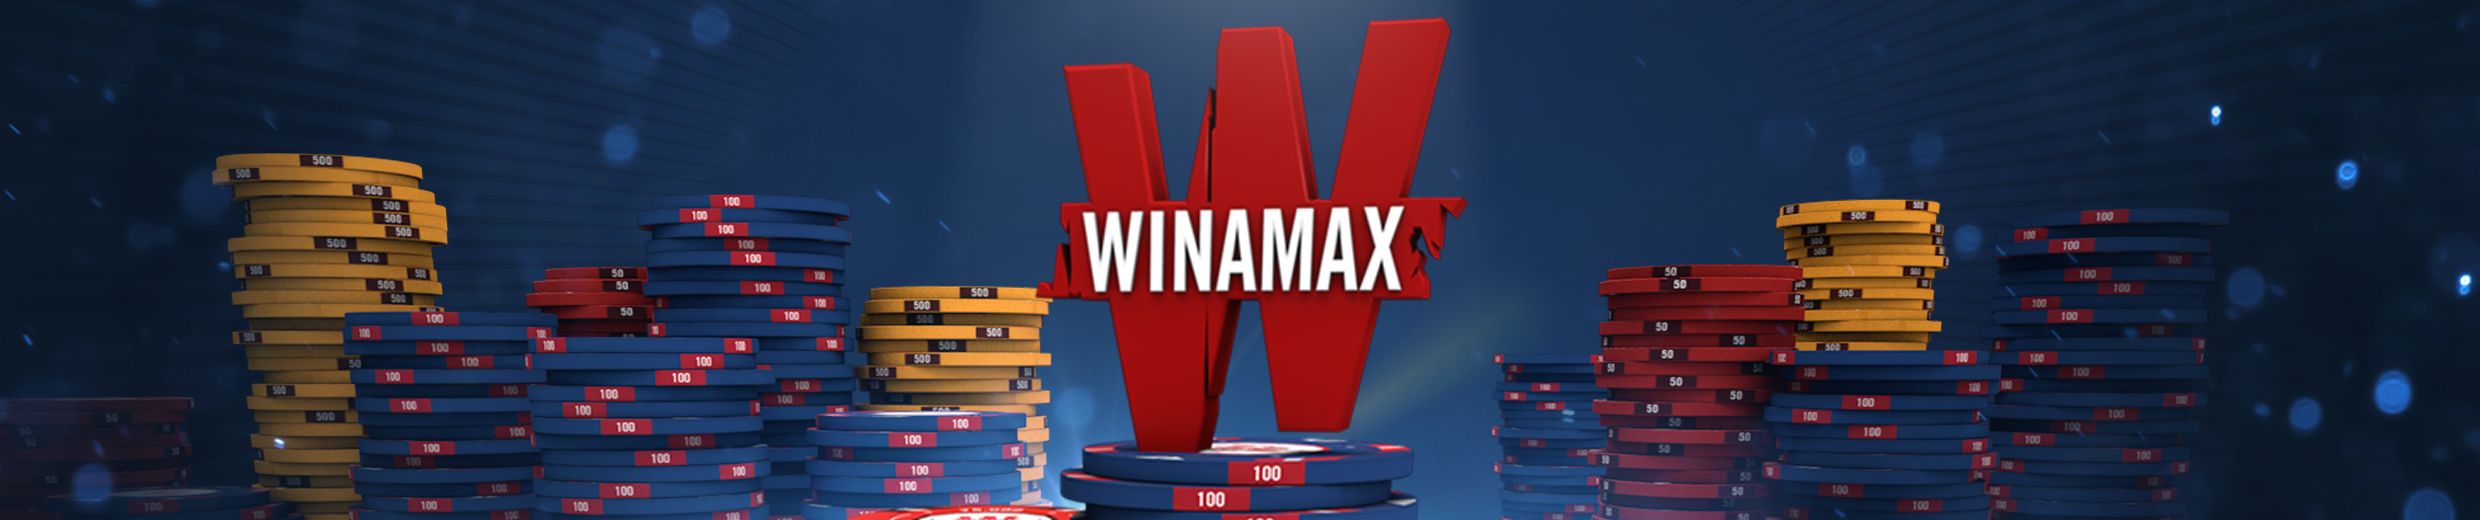 sitio web de Winamax